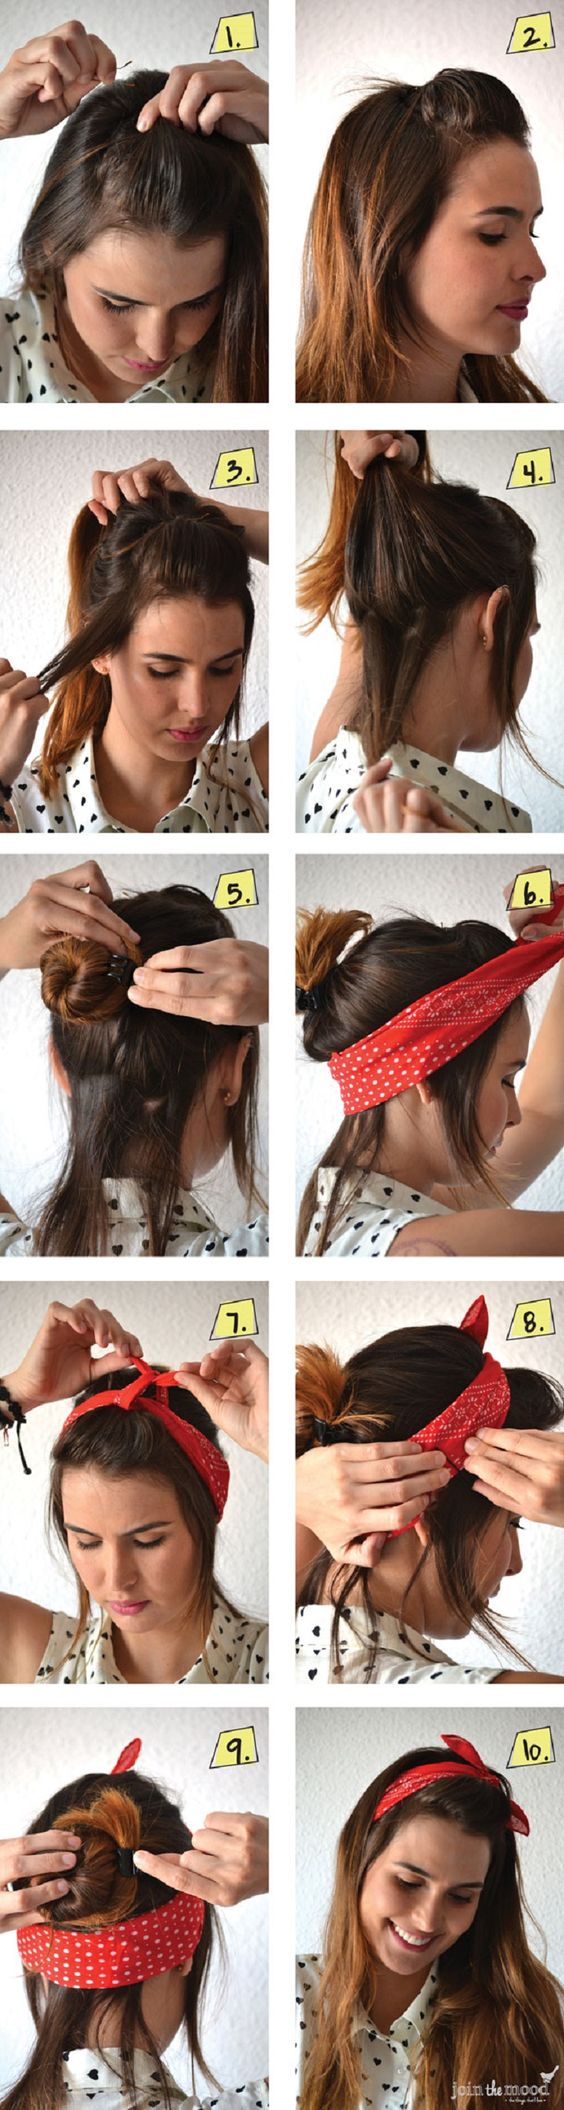 comment mettre foulard cheveux